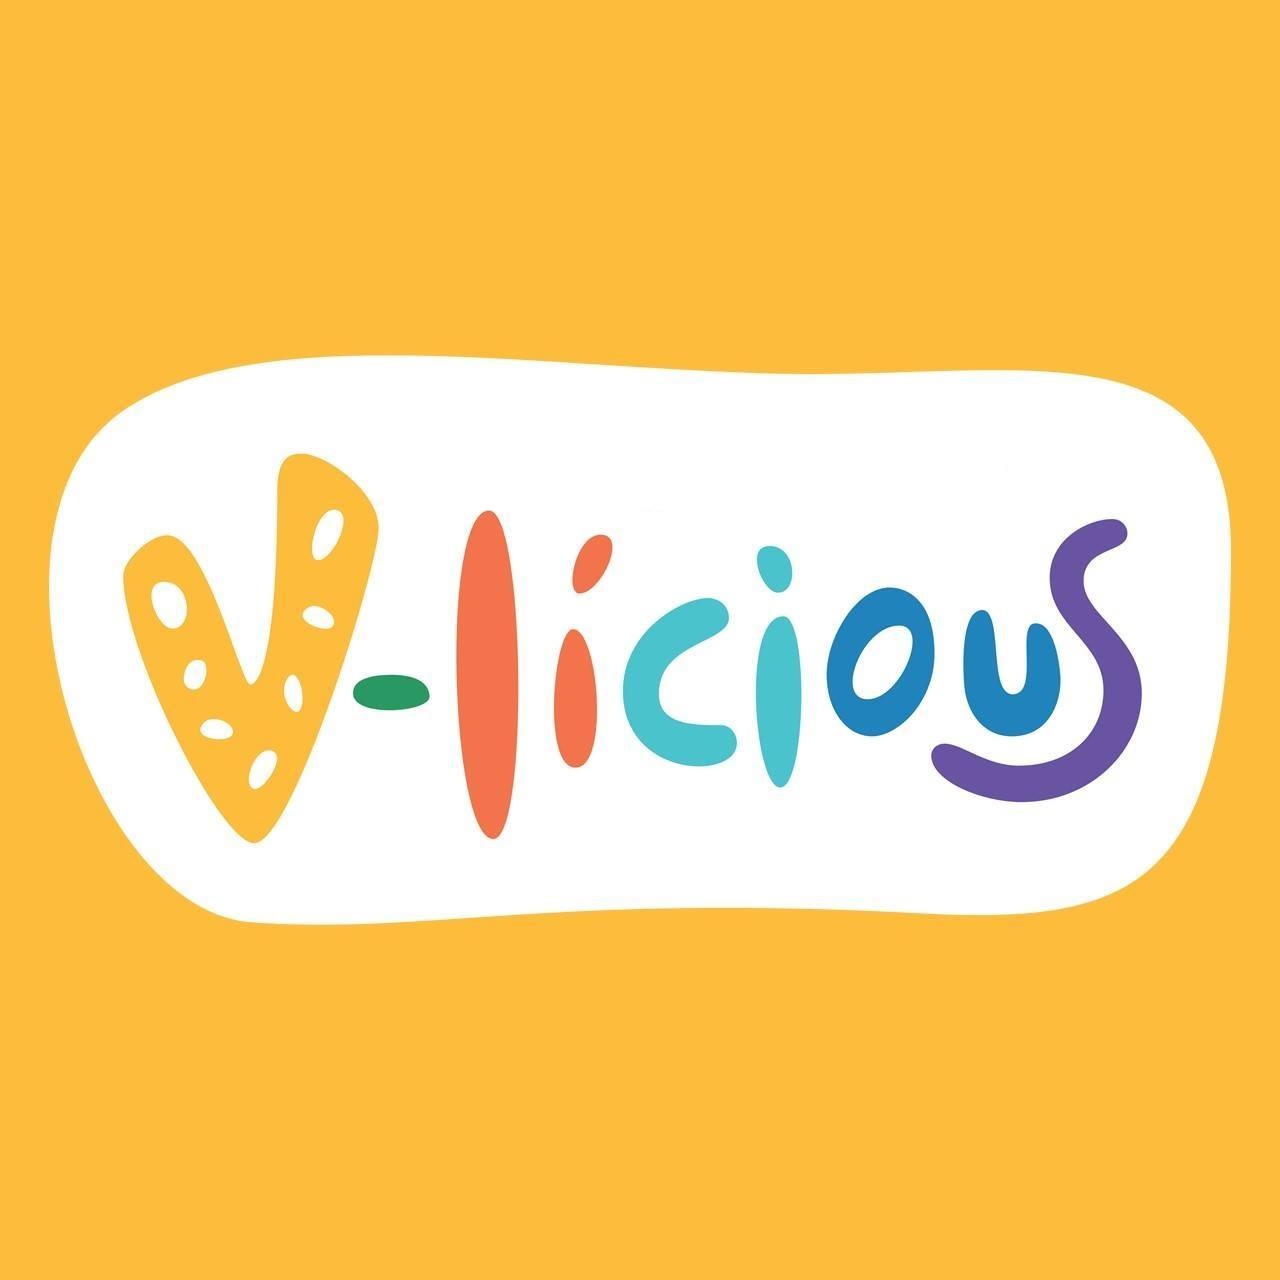 V-licious